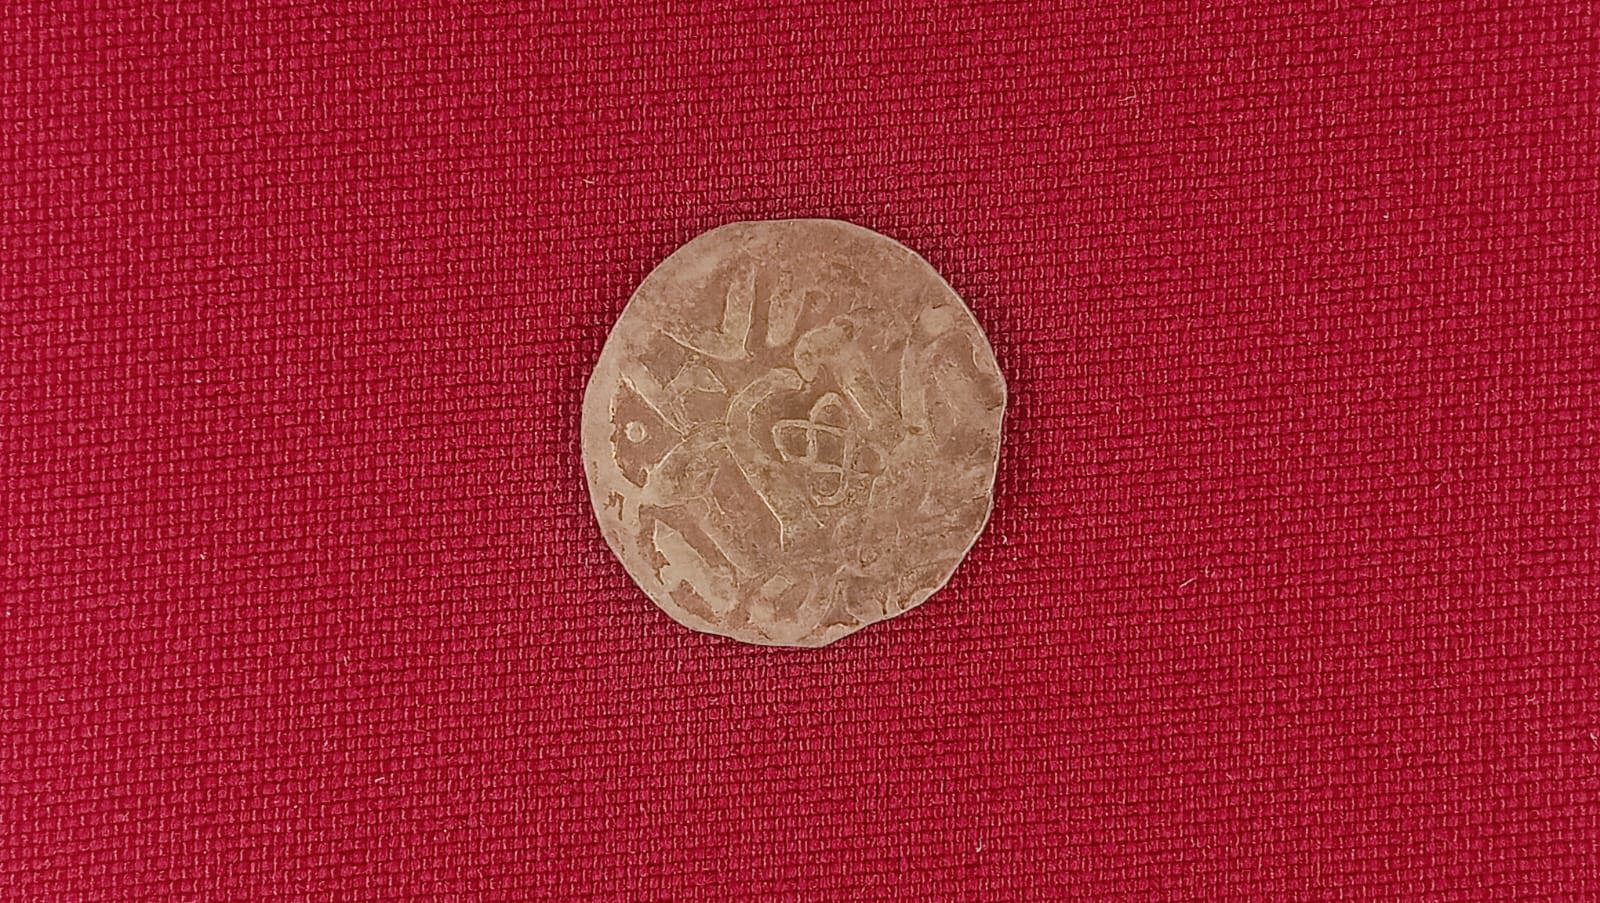 Монета в экспозиции 10 000 лет до Тульского кремля.jpg